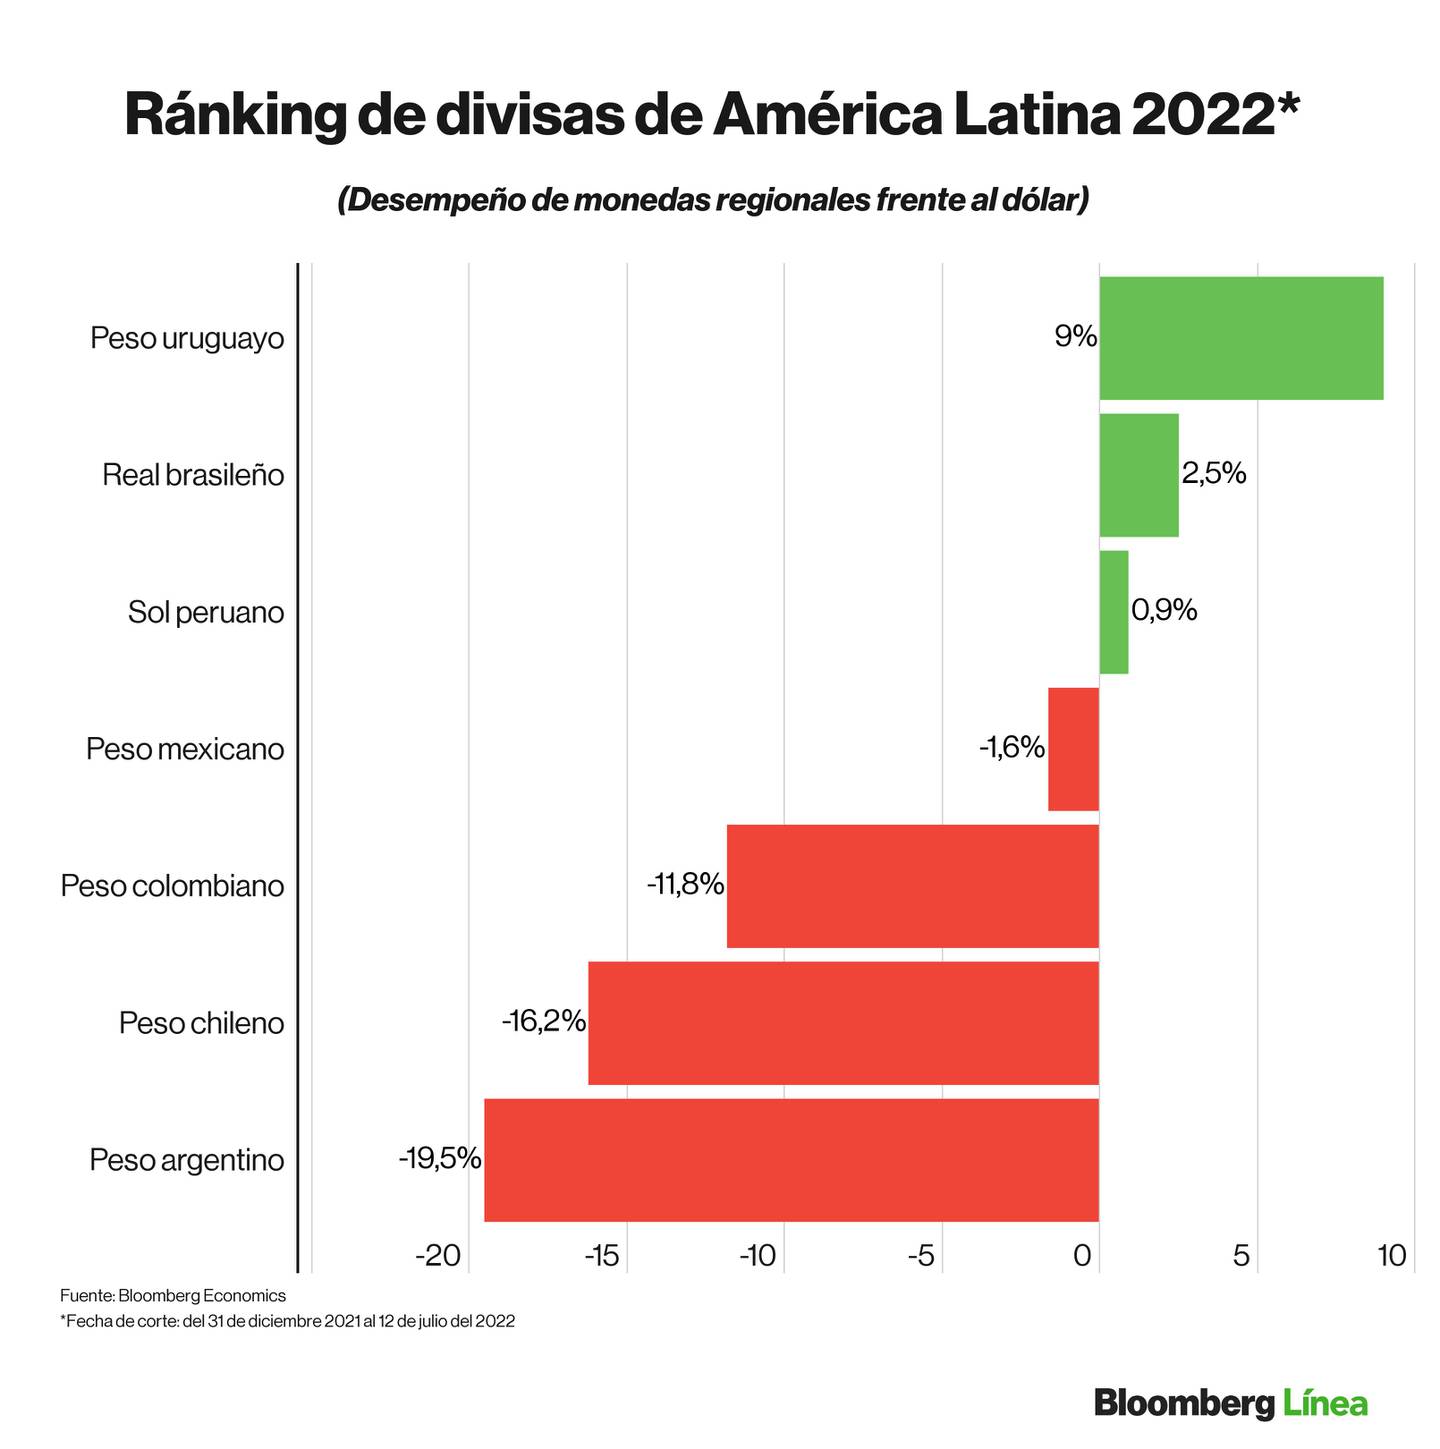 Dólar hoy: Ránking de divisas de mercados emergentes y monedas de países de América Latina en lo que va del 2022.dfd